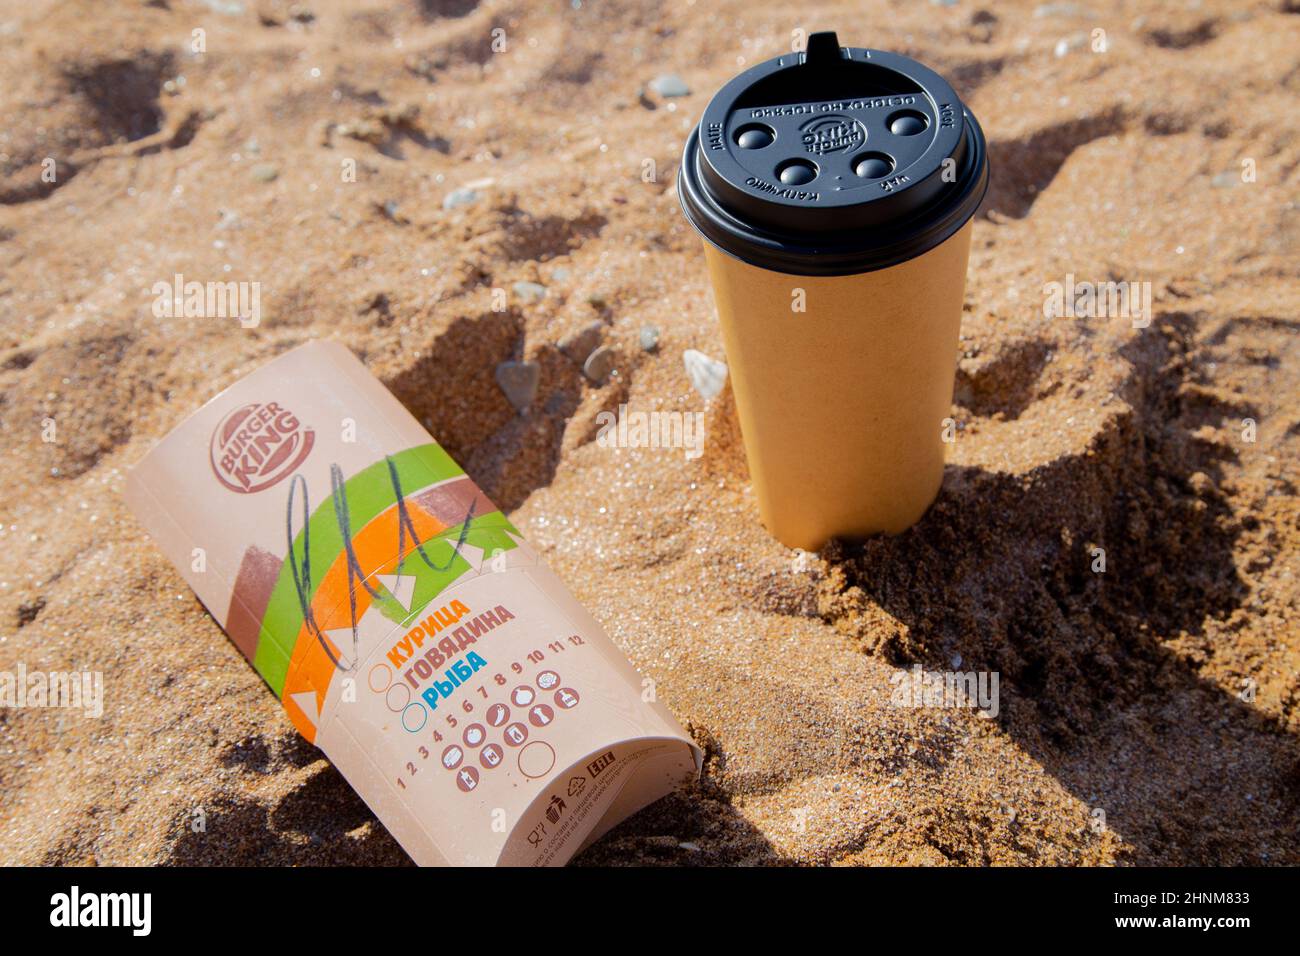 Kaffee in einer Einweg-Tasse und Burger von Burger King liegen auf dem Sand unter der Sonne Stockfoto